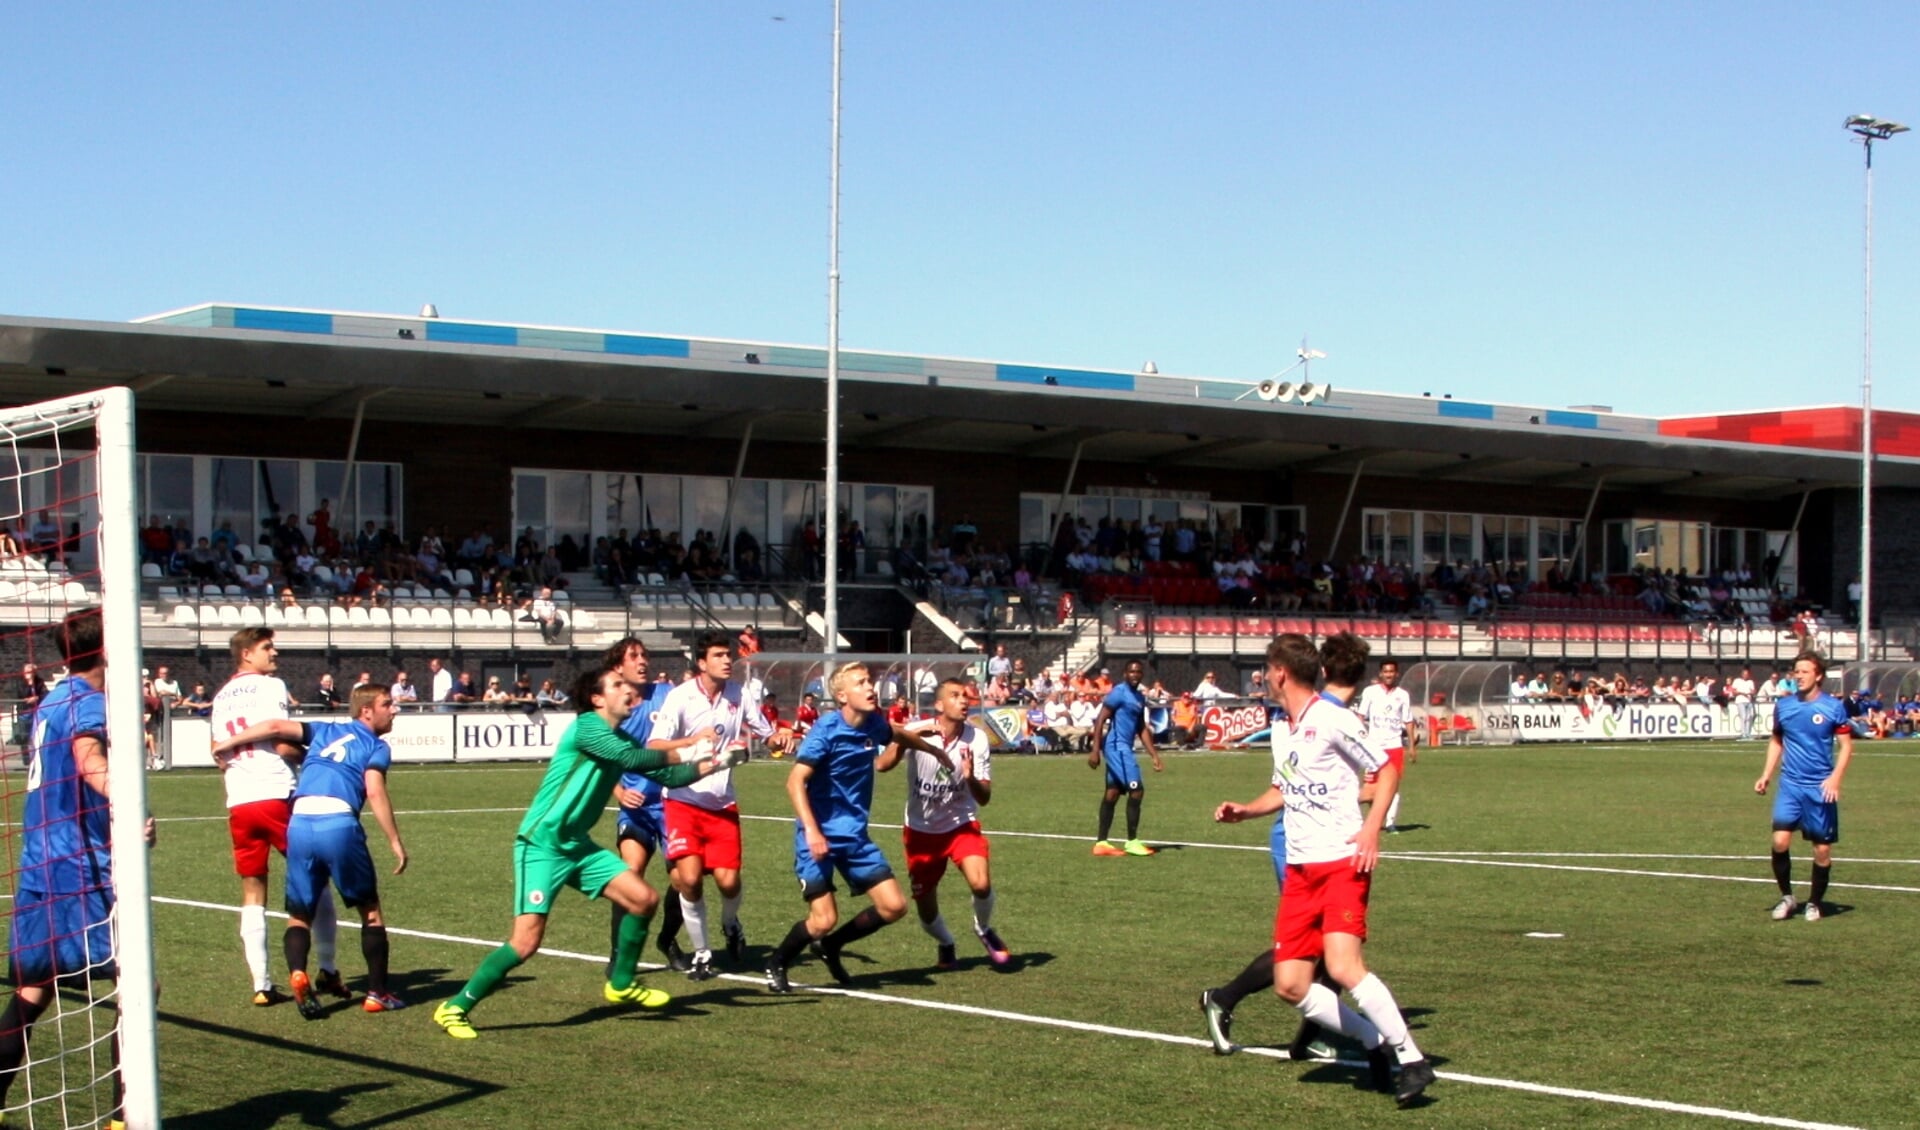 V.v. Noordwijk kon het doelsaldo afgelopen zaterdag stevig opkrikken met zes goals tegen Nootdorp. | Foto: WS